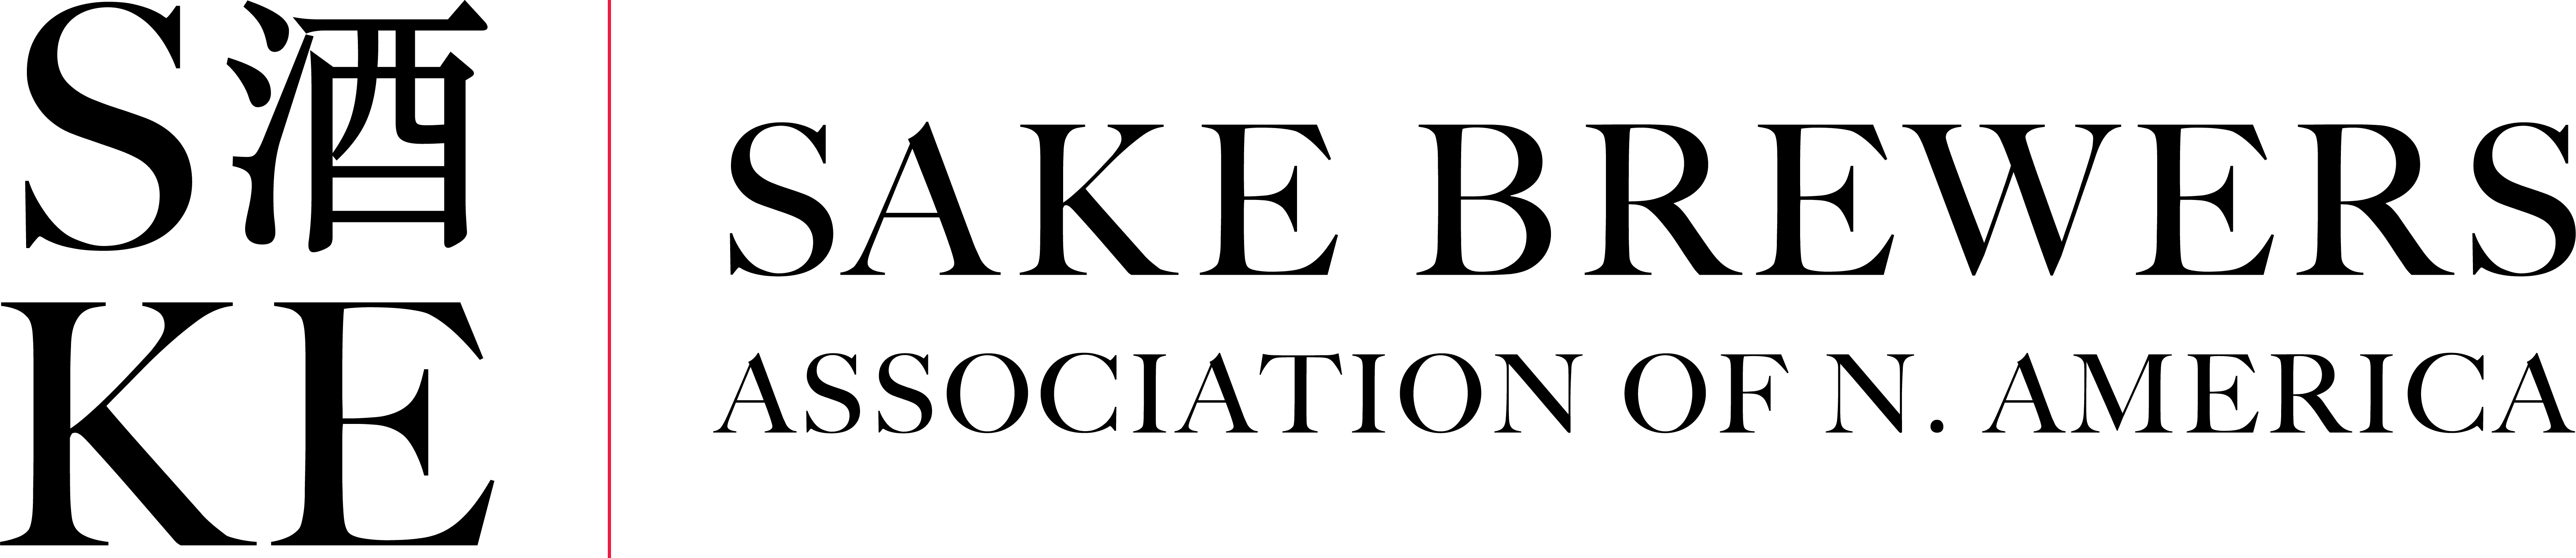 Sake Brewers Association of N. America